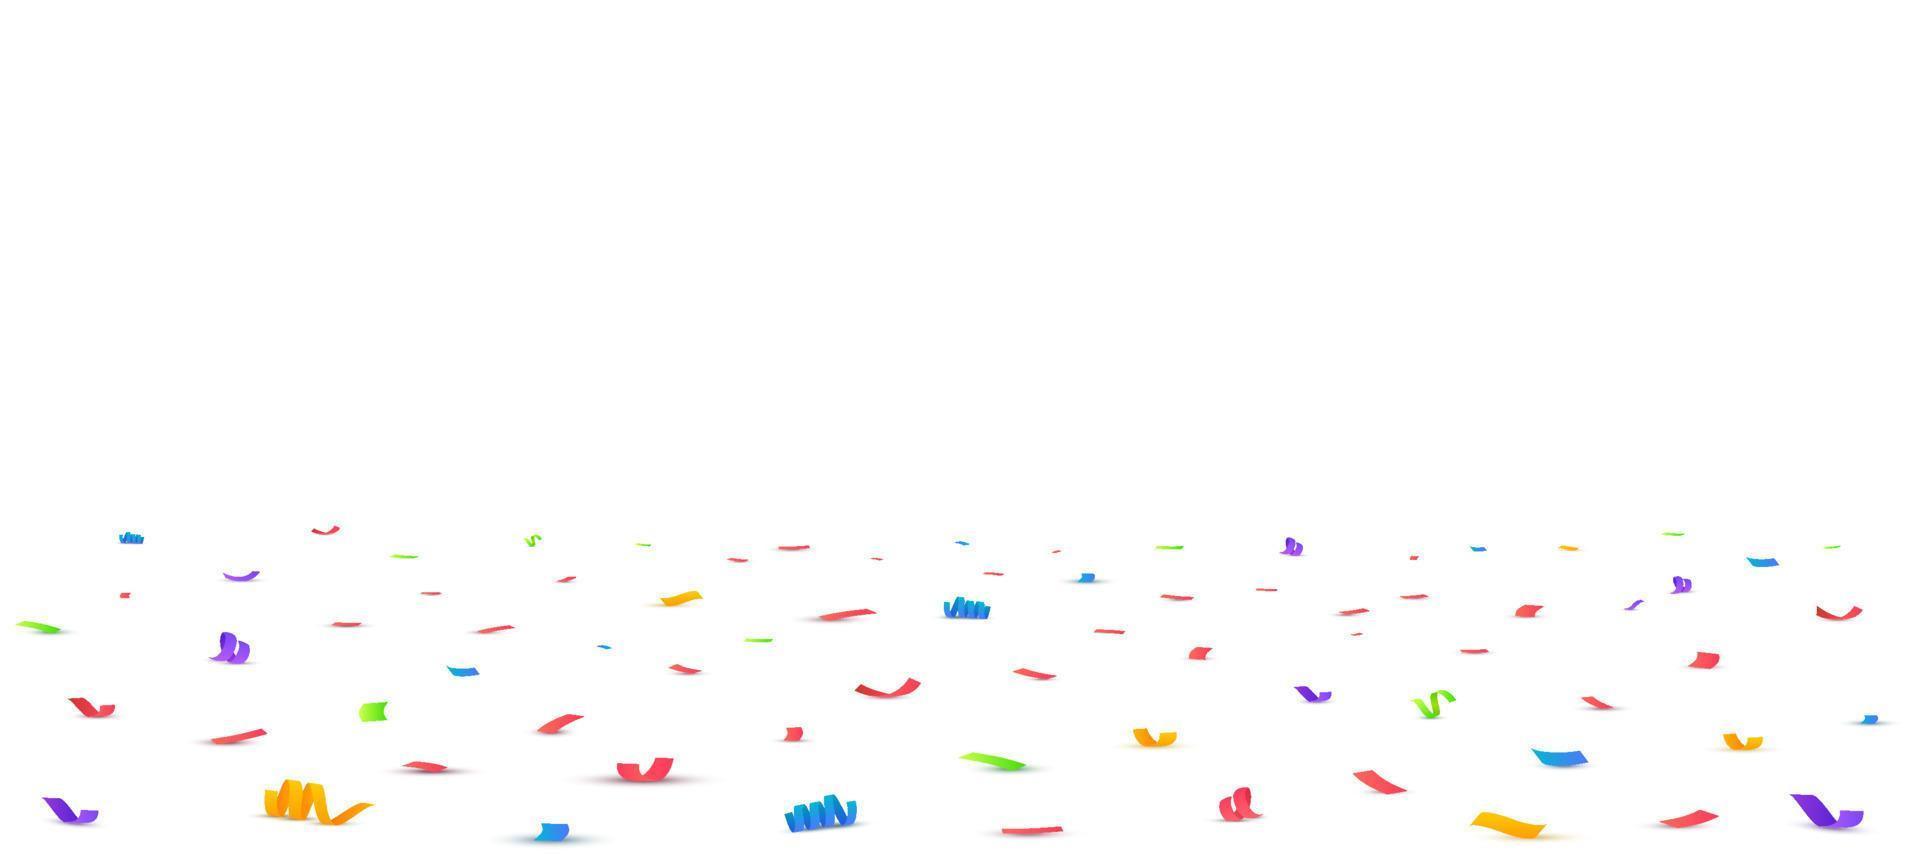 Confetti background. Falling confetti, birthday vector illustration